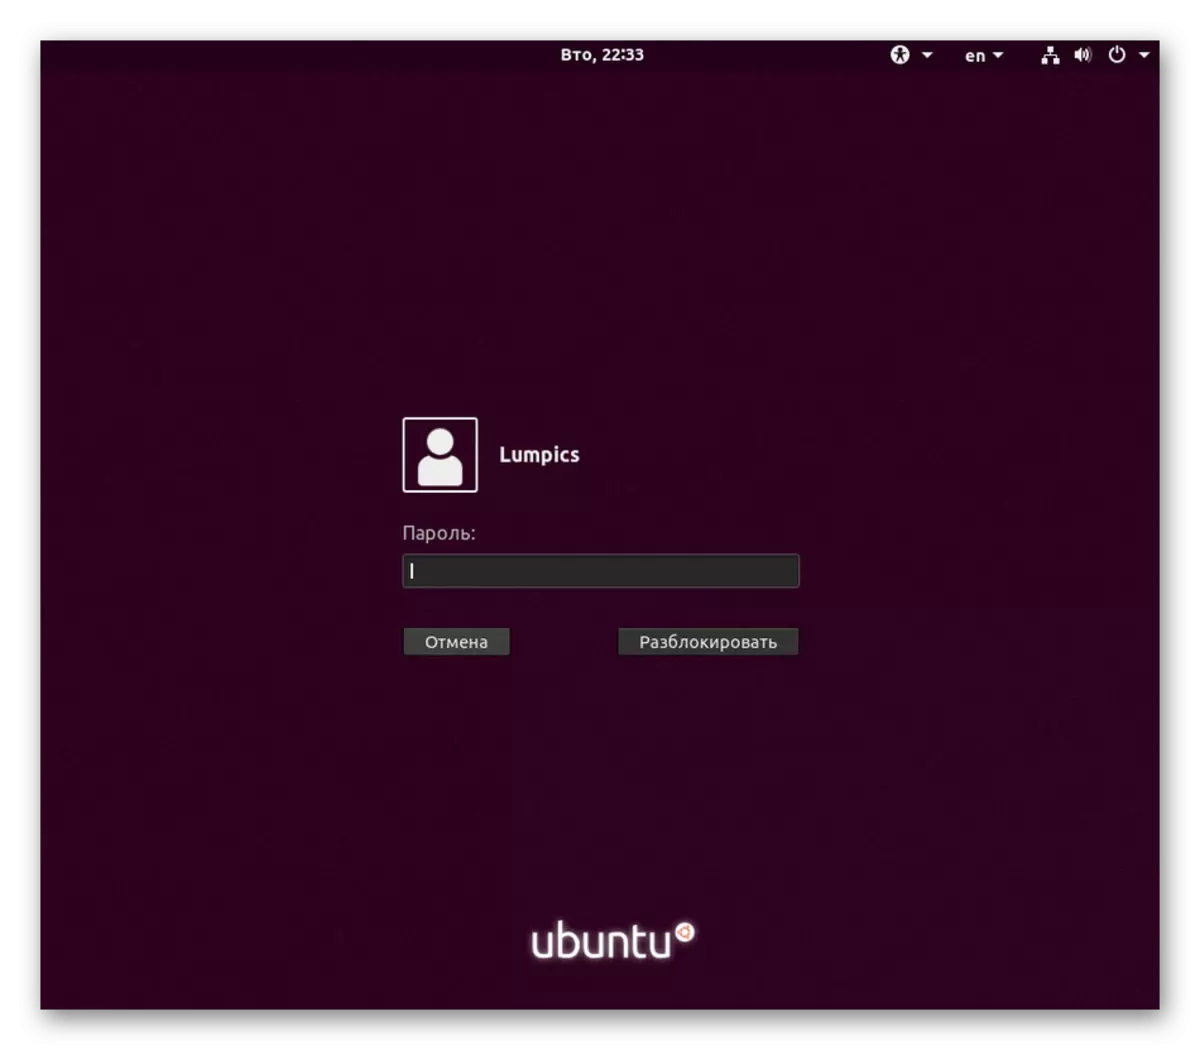 შეიყვანეთ პაროლი მომხმარებლისთვის აქტიურ Linux- ის სხდომაზე მომხმარებლის შესაცვლელად